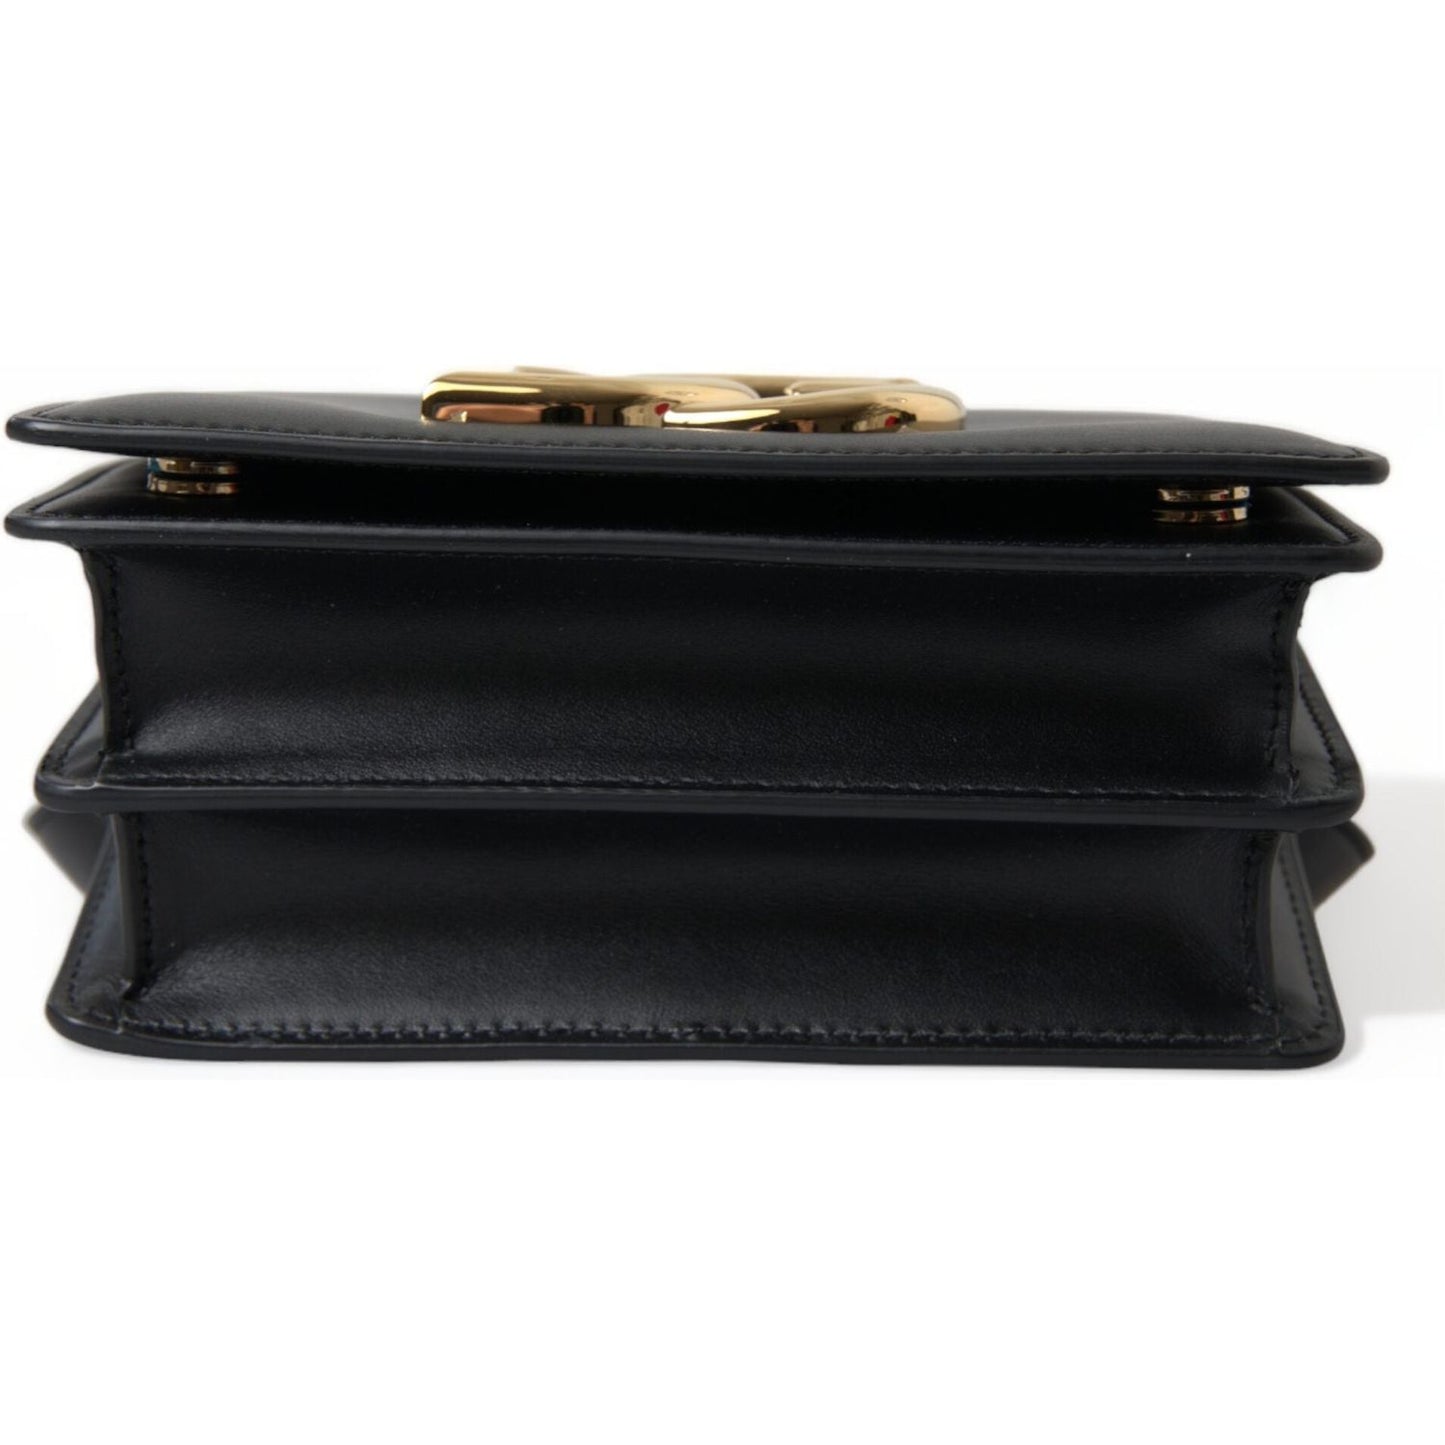 Dolce & GabbanaElegant Black Leather Belt Bag with Gold AccentsMcRichard Designer Brands£1279.00